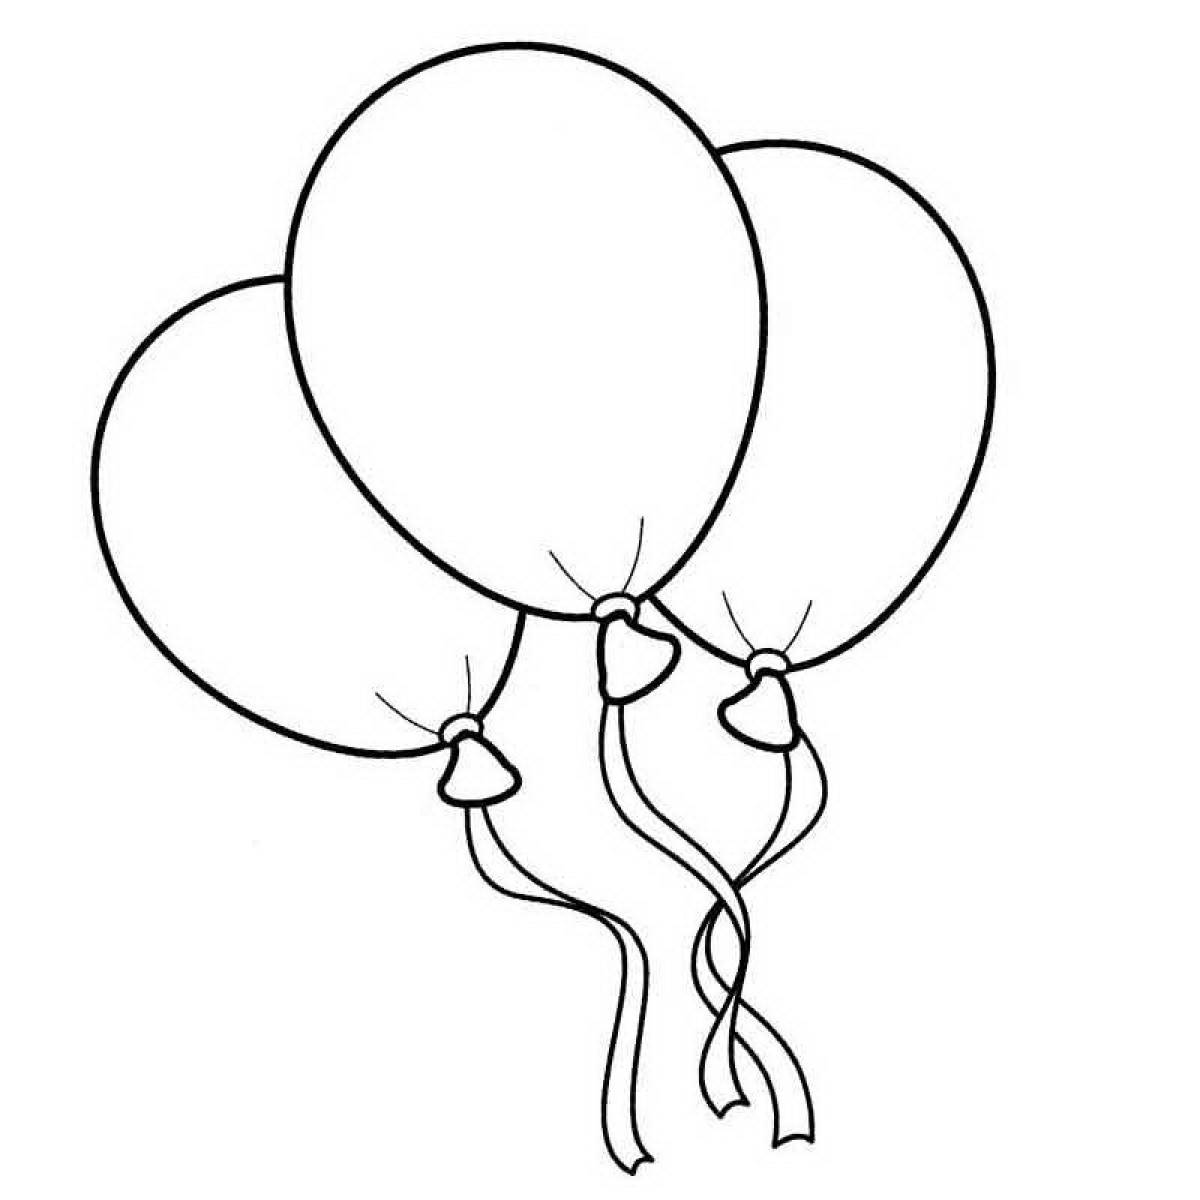 Balloons #9